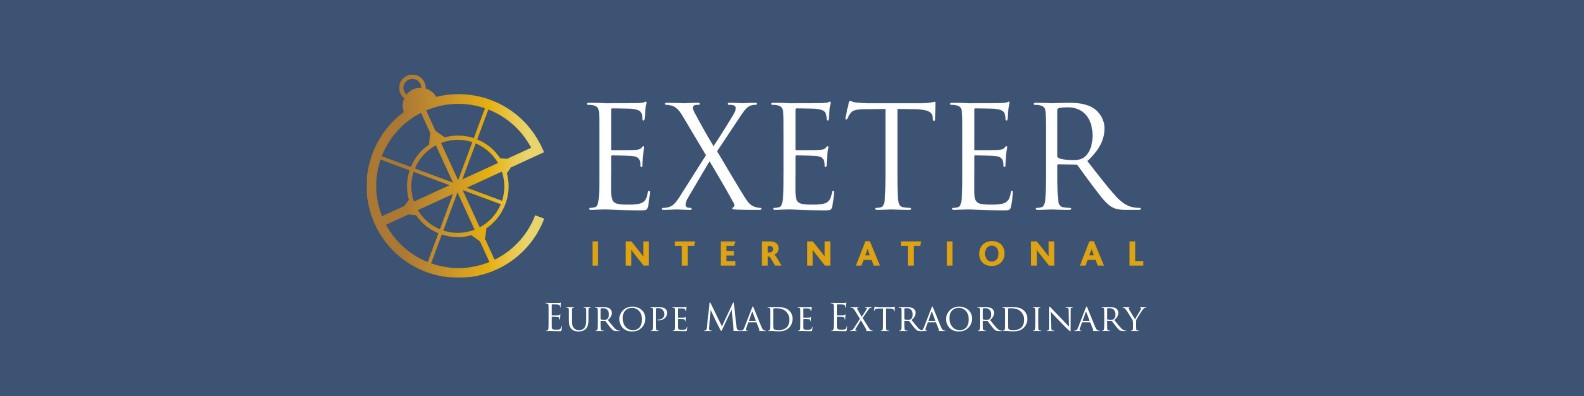 Exeter International | LinkedIn